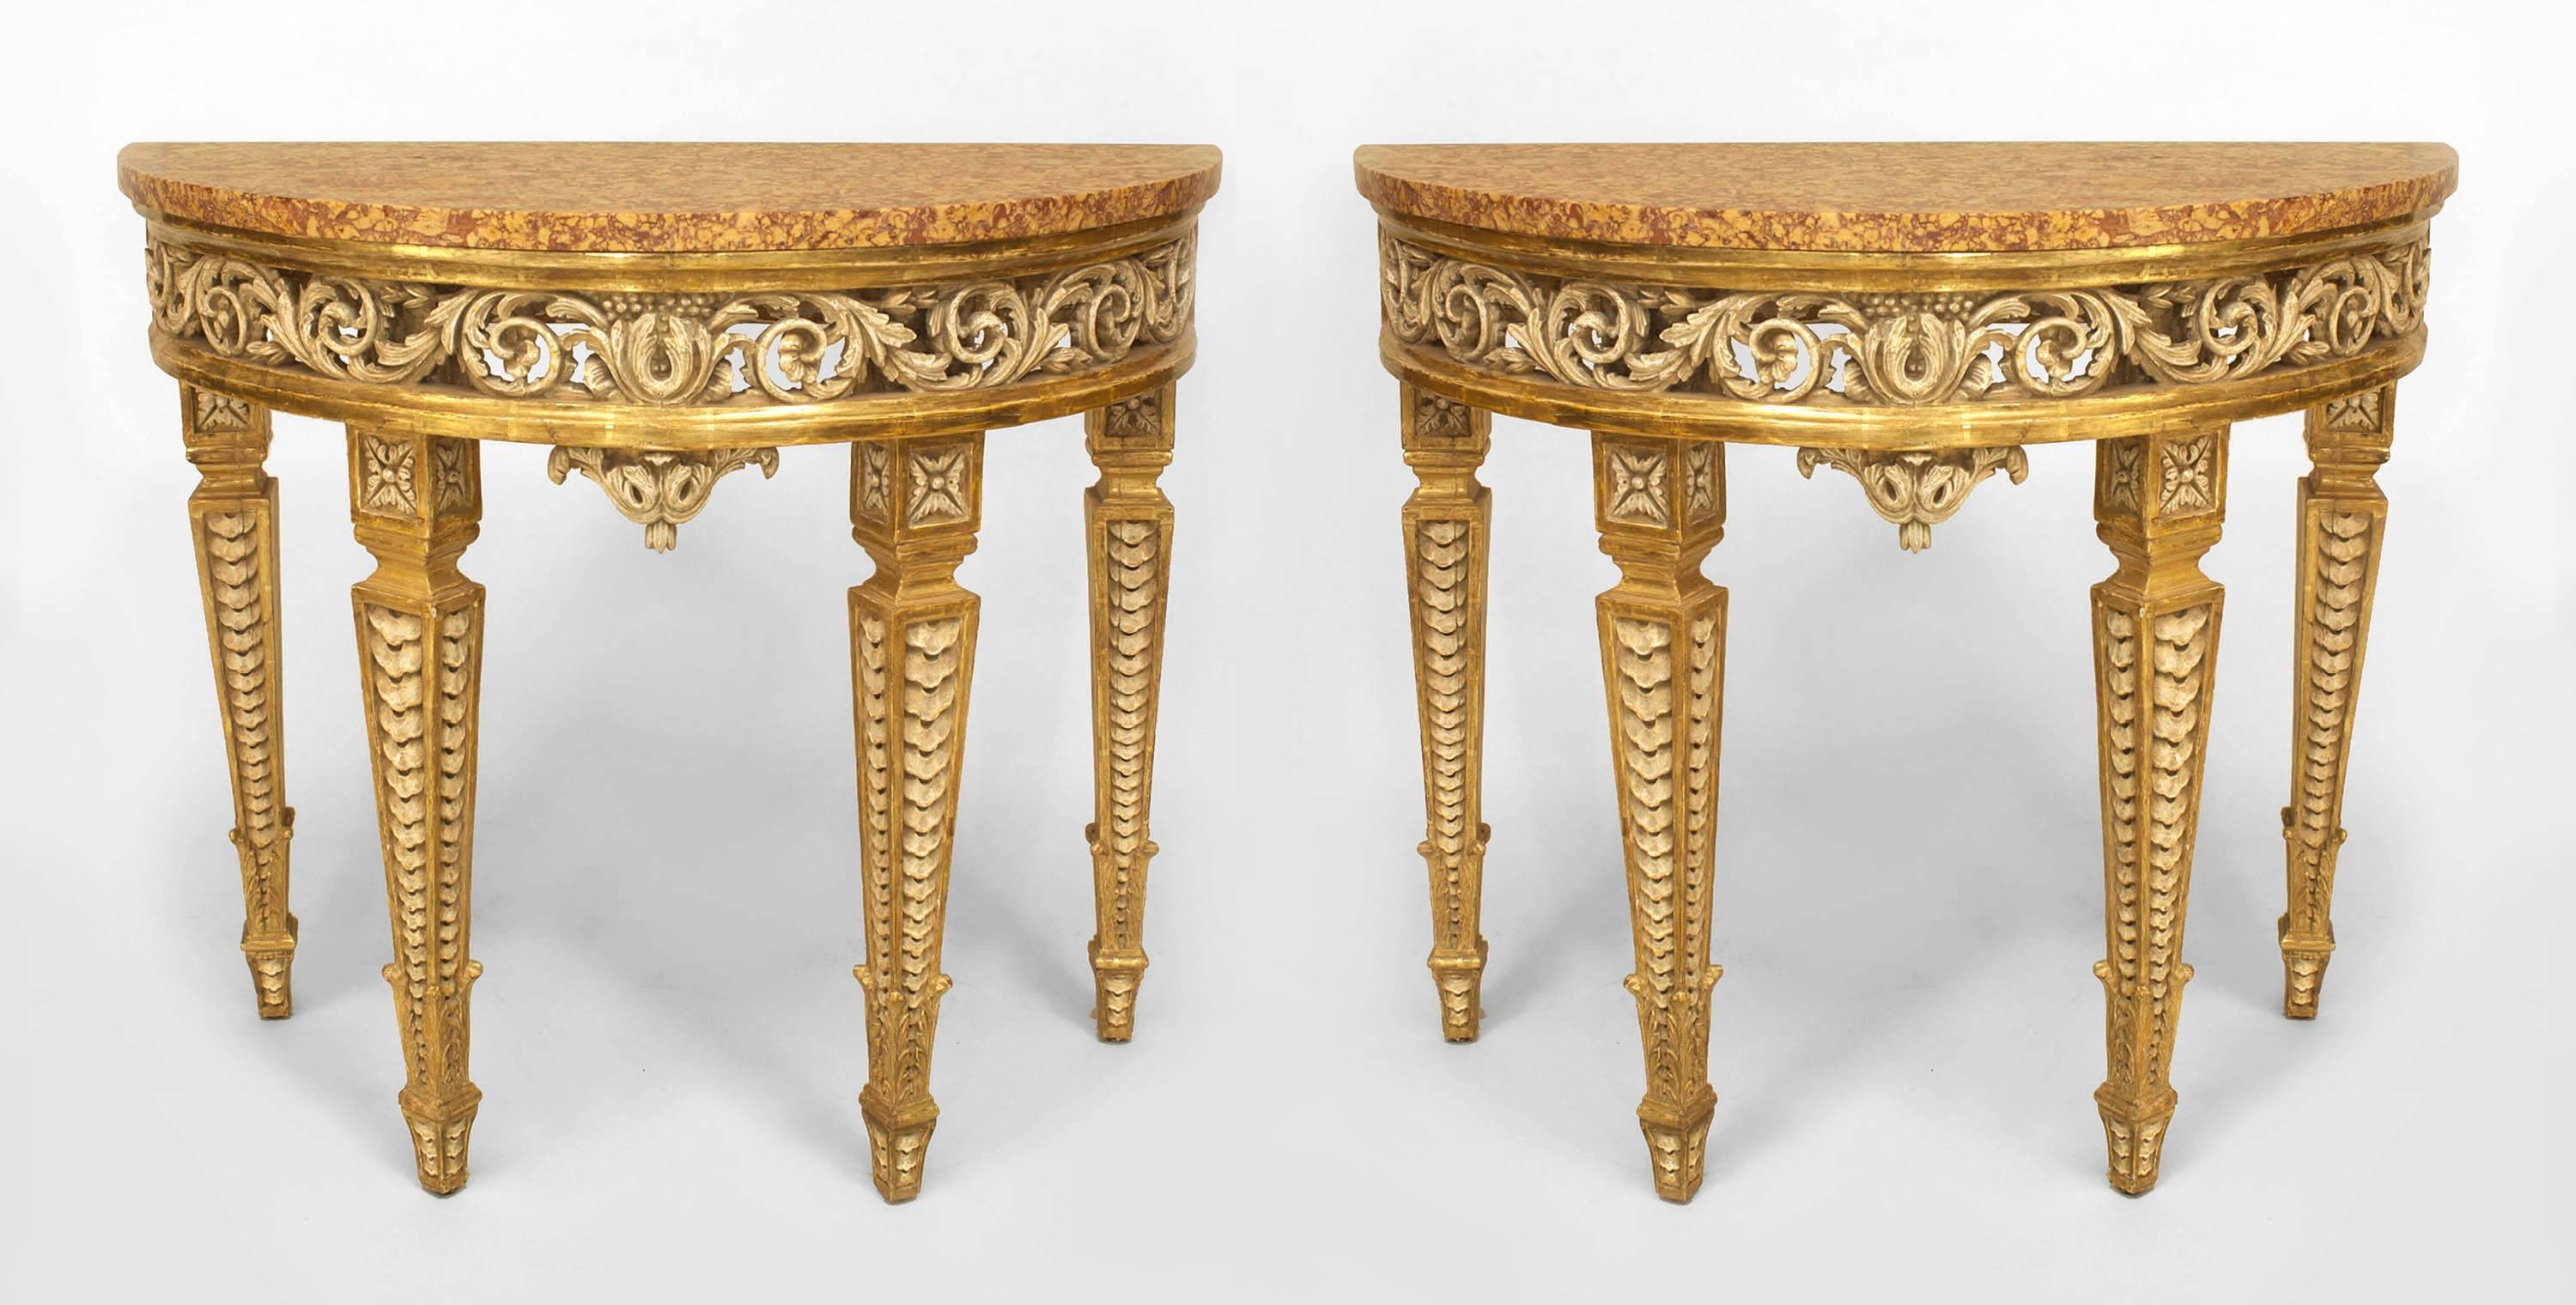 Paar italienische neoklassizistische (18. Jahrhundert) cremefarbene & paketvergoldete Demilune-Konsolentische mit einer durchbrochenen Schürze, die auf geschnitzten, quadratischen, konischen Beinen mit späteren Brocatelle-Marmorplatten ruhen (weiße